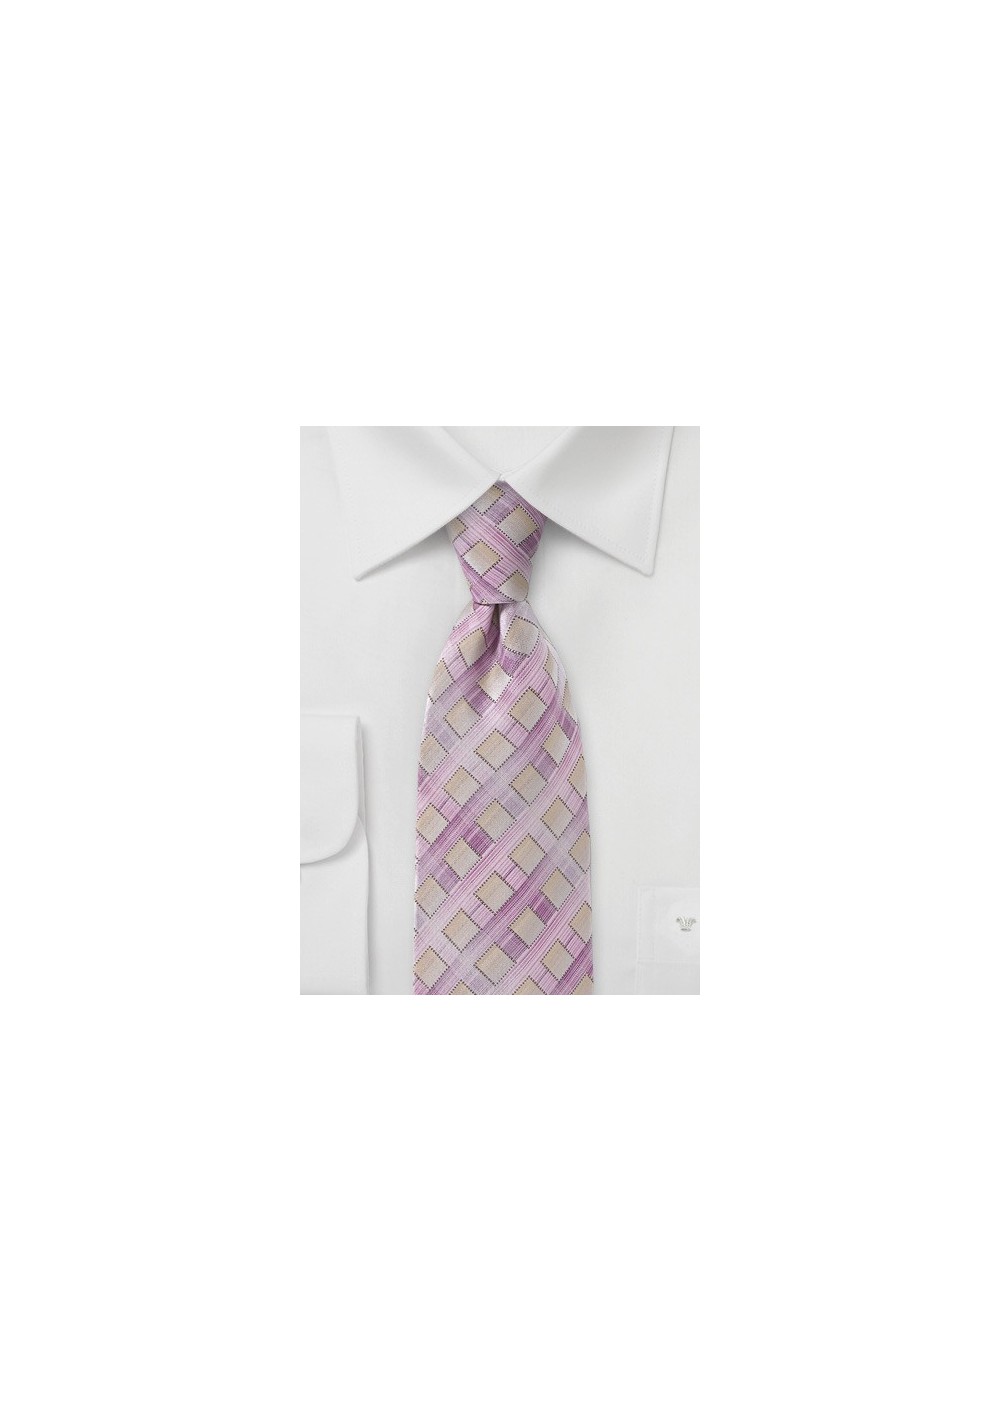 Diamond Patterned Tie in Lilacs